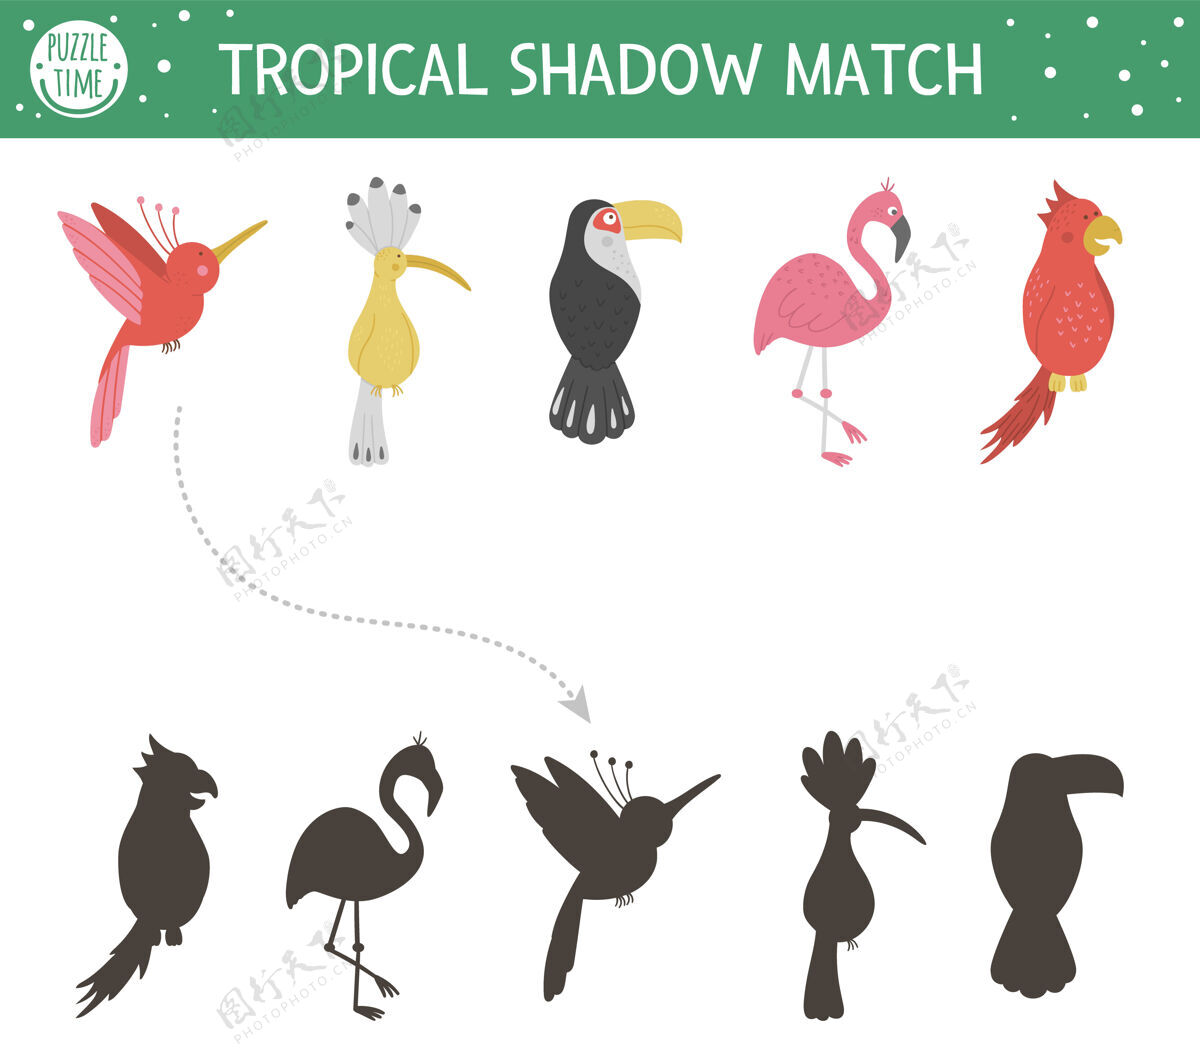 消遣热带阴影匹配活动儿童.幼儿园丛林拼图可爱异域教育谜语.发现正确的鸟类轮廓可打印工作表发现鸟谜语